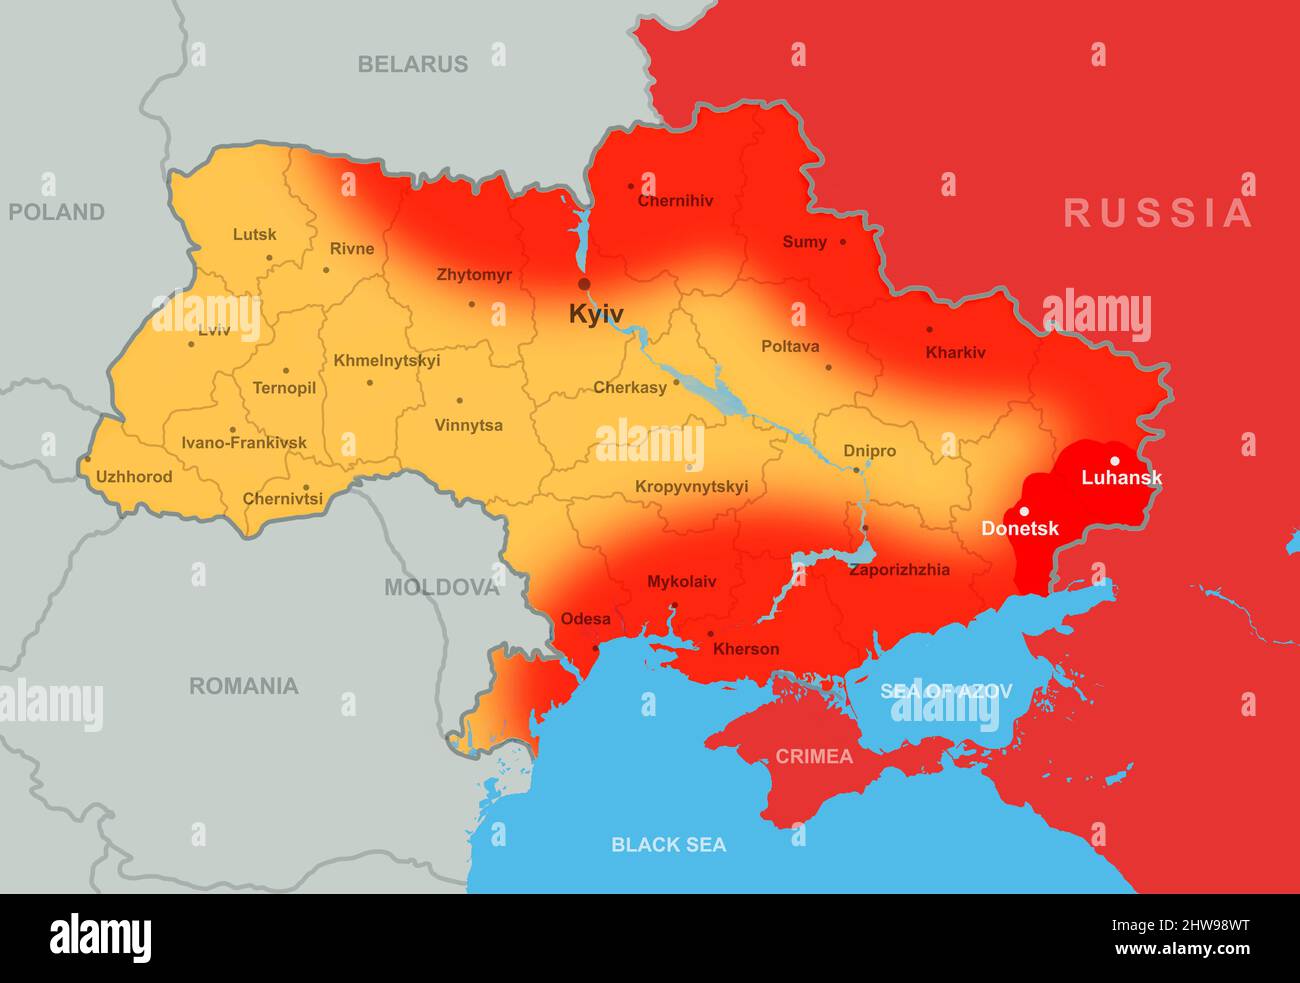 Der Krieg in der Ukraine, das Territorium Russlands und der Ukraine auf der Europakarte. Die Ukraine grenzt an die Region Donbass, russische Invasion in der Ukraine auf militärpolitischer Basis Stockfoto